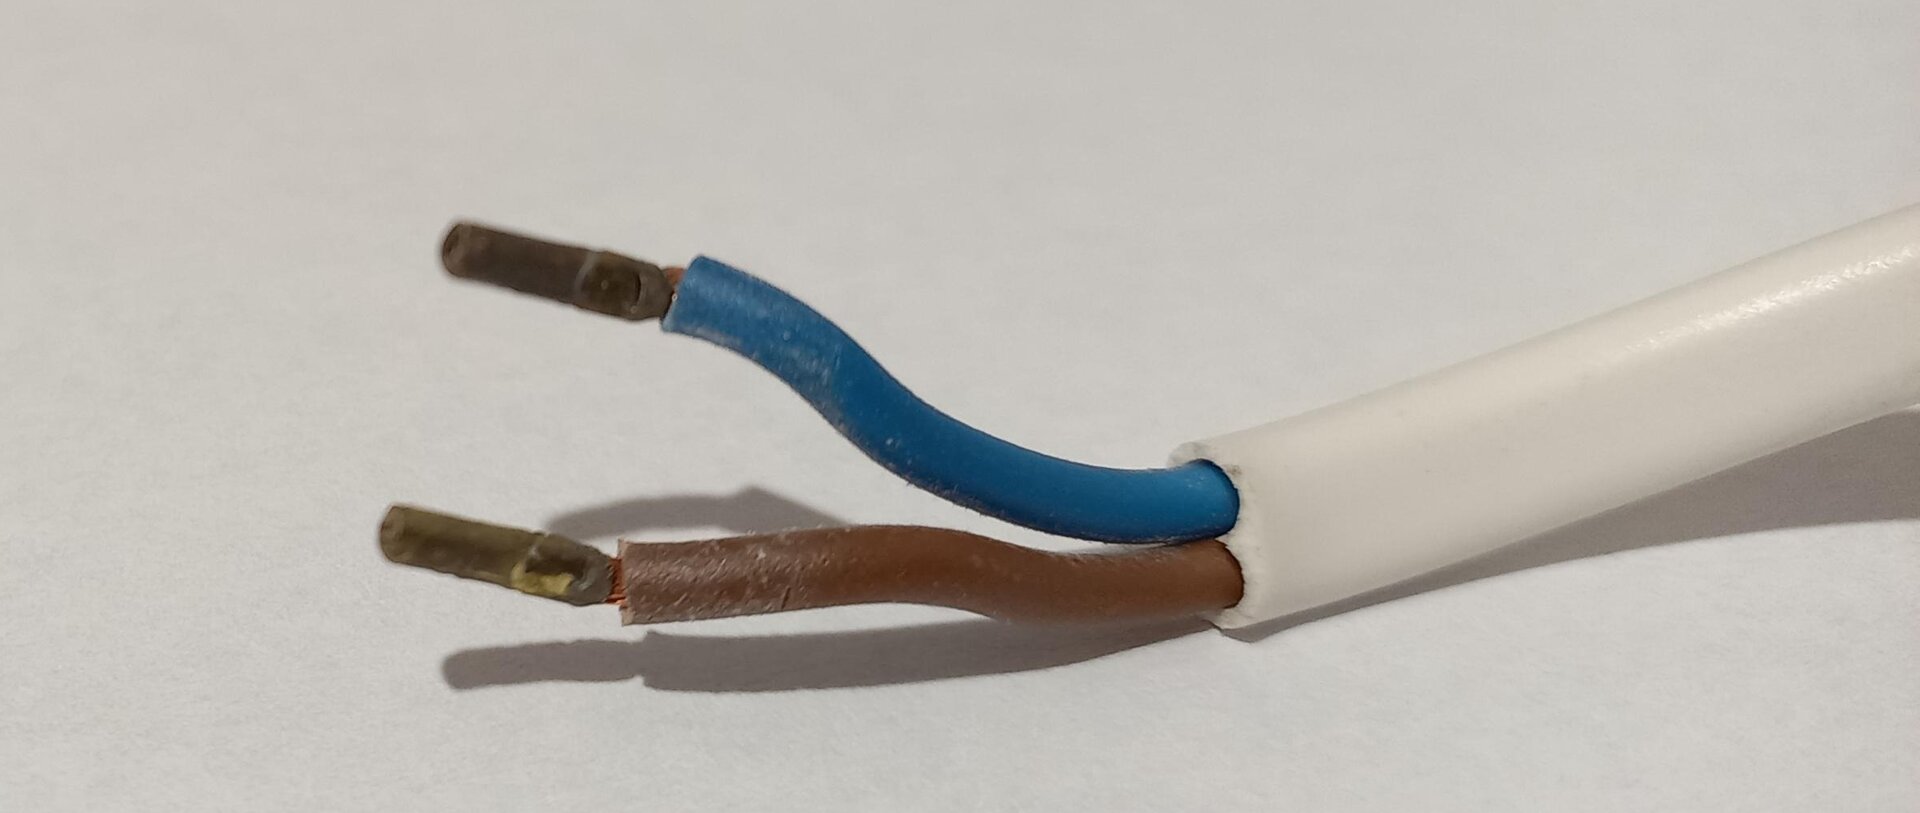 Rys. 4a. Zdjęcie przedstawia kabel dwużyłowy. Składa się on z zewnętrznej, gumowej otoczki w kolorze białym. Wewnątrz otoczki znajdują się dwa przewody miedziane. Jeden otoczony jest gumową izolacją w kolorze brązowym, drugi w kolorze niebieskim.